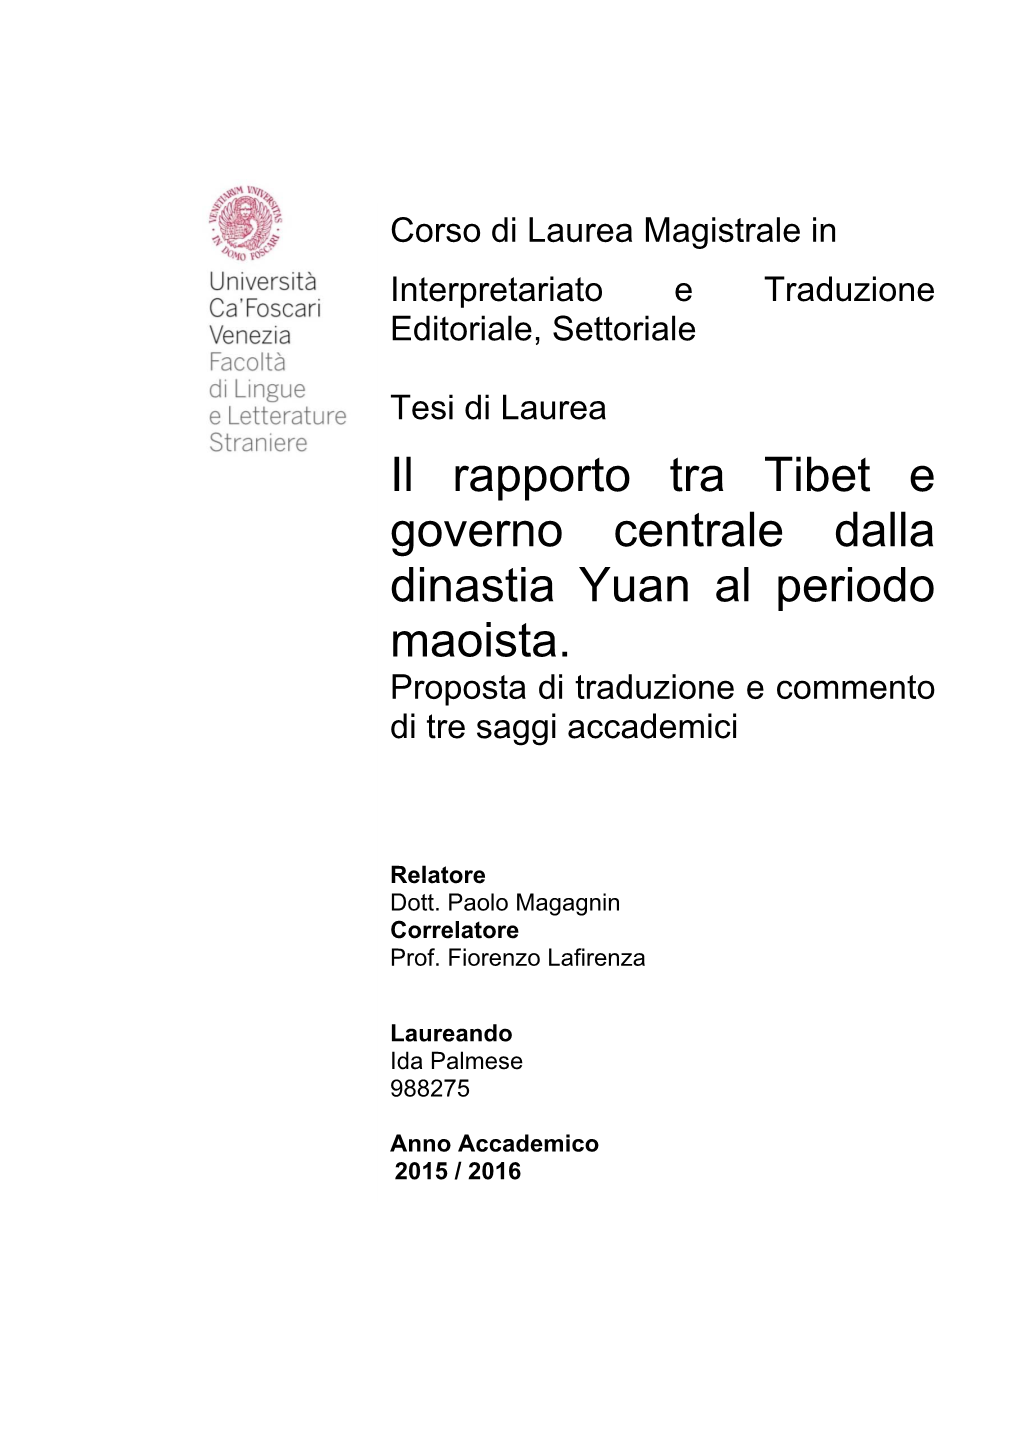 Il Rapporto Tra Tibet E Governo Centrale Dalla Dinastia Yuan Al Periodo Maoista